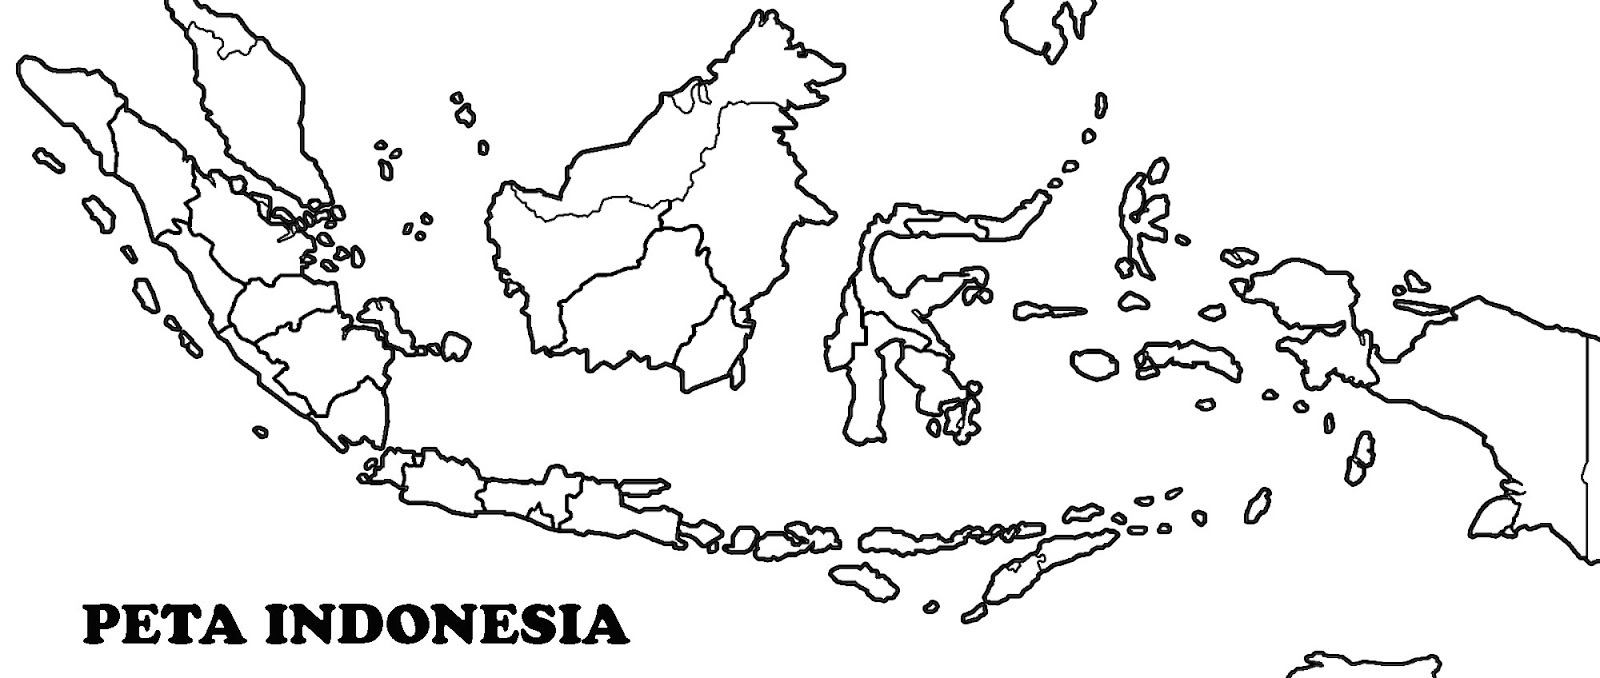 Peta Indonesia terbaru 2021 peta buta dan peta lengkap 